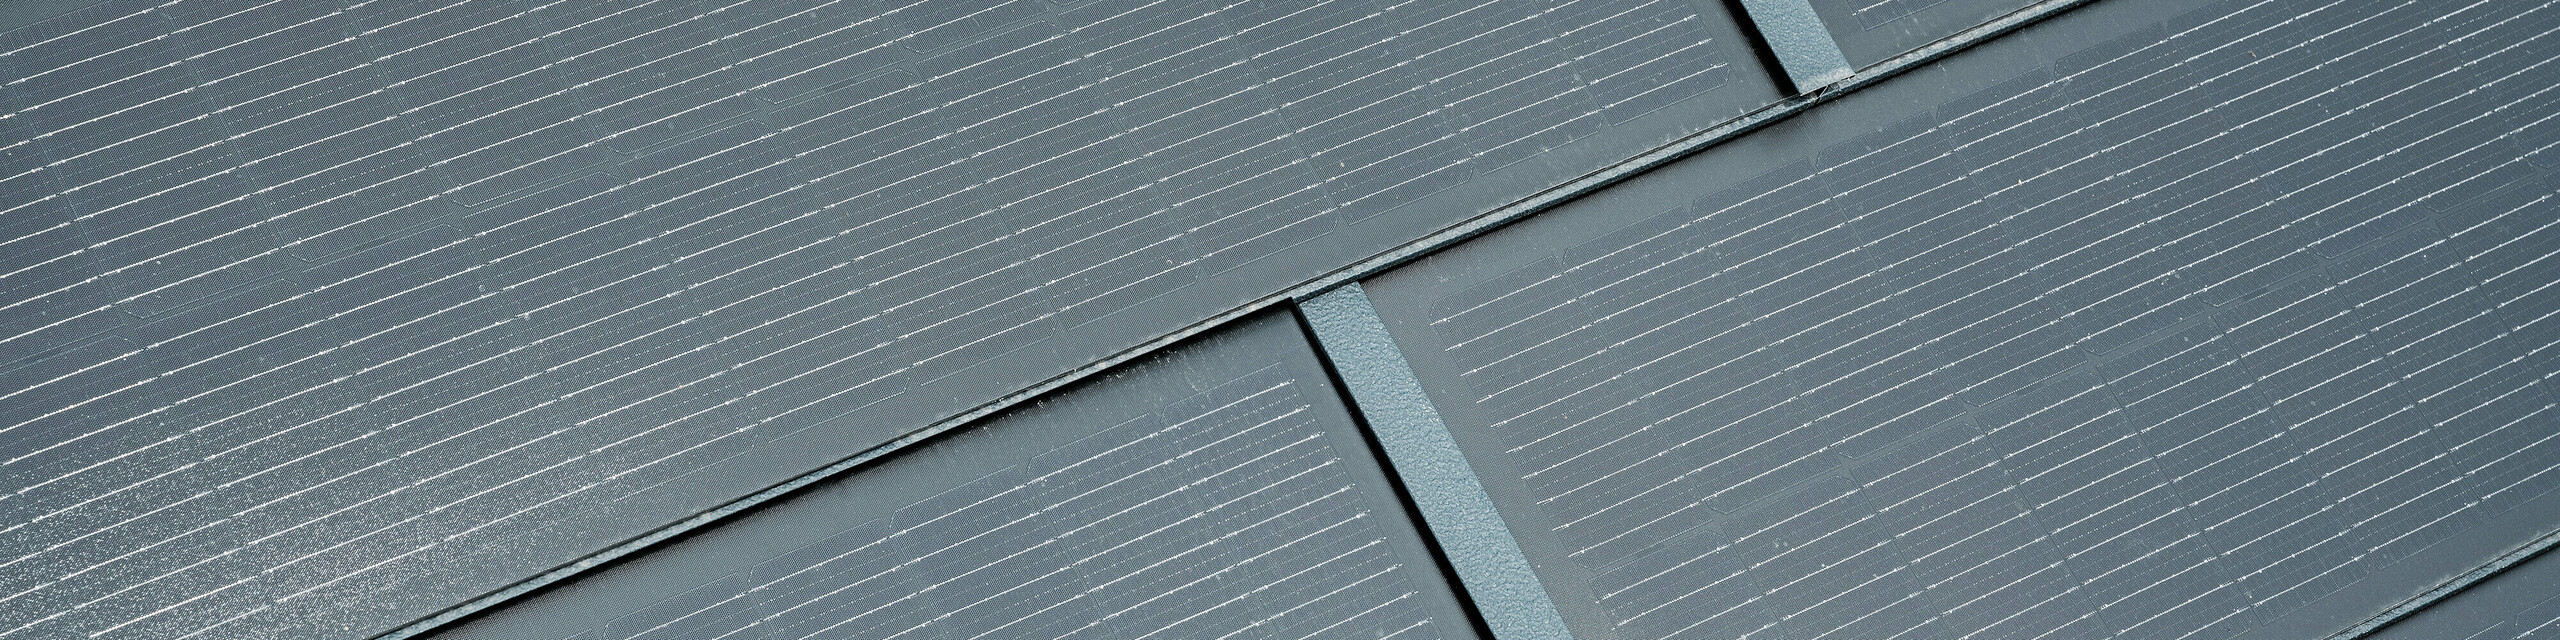 Detailaufnahme von PREFA Solardachplatten in Anthrazit. Die feinen Linien der Solarzellen sind deutlich sichtbar und fügen sich harmonisch in das Gesamtdesign ein. Diese ansprechende Integration von Solartechnologie in die Dachbedeckung vereint Funktionalität mit moderner Ästhetik und bietet eine umweltfreundliche Energiequelle für Gebäude.